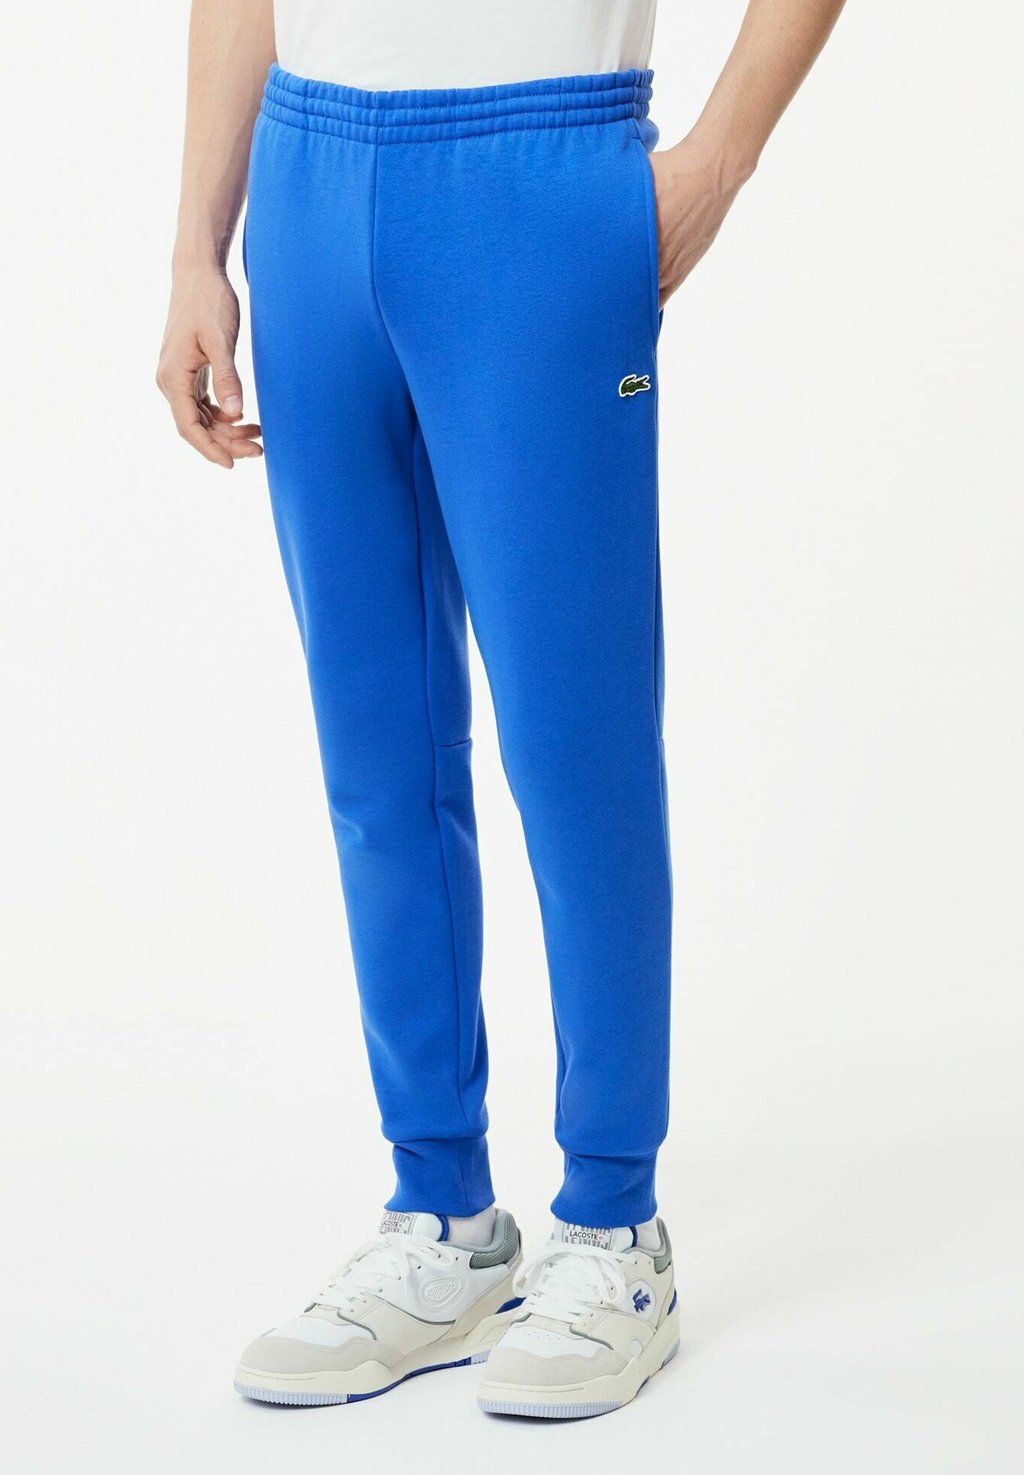 Спортивные брюки LIFESTYLE Lacoste, вереск синий брюки вереск синий